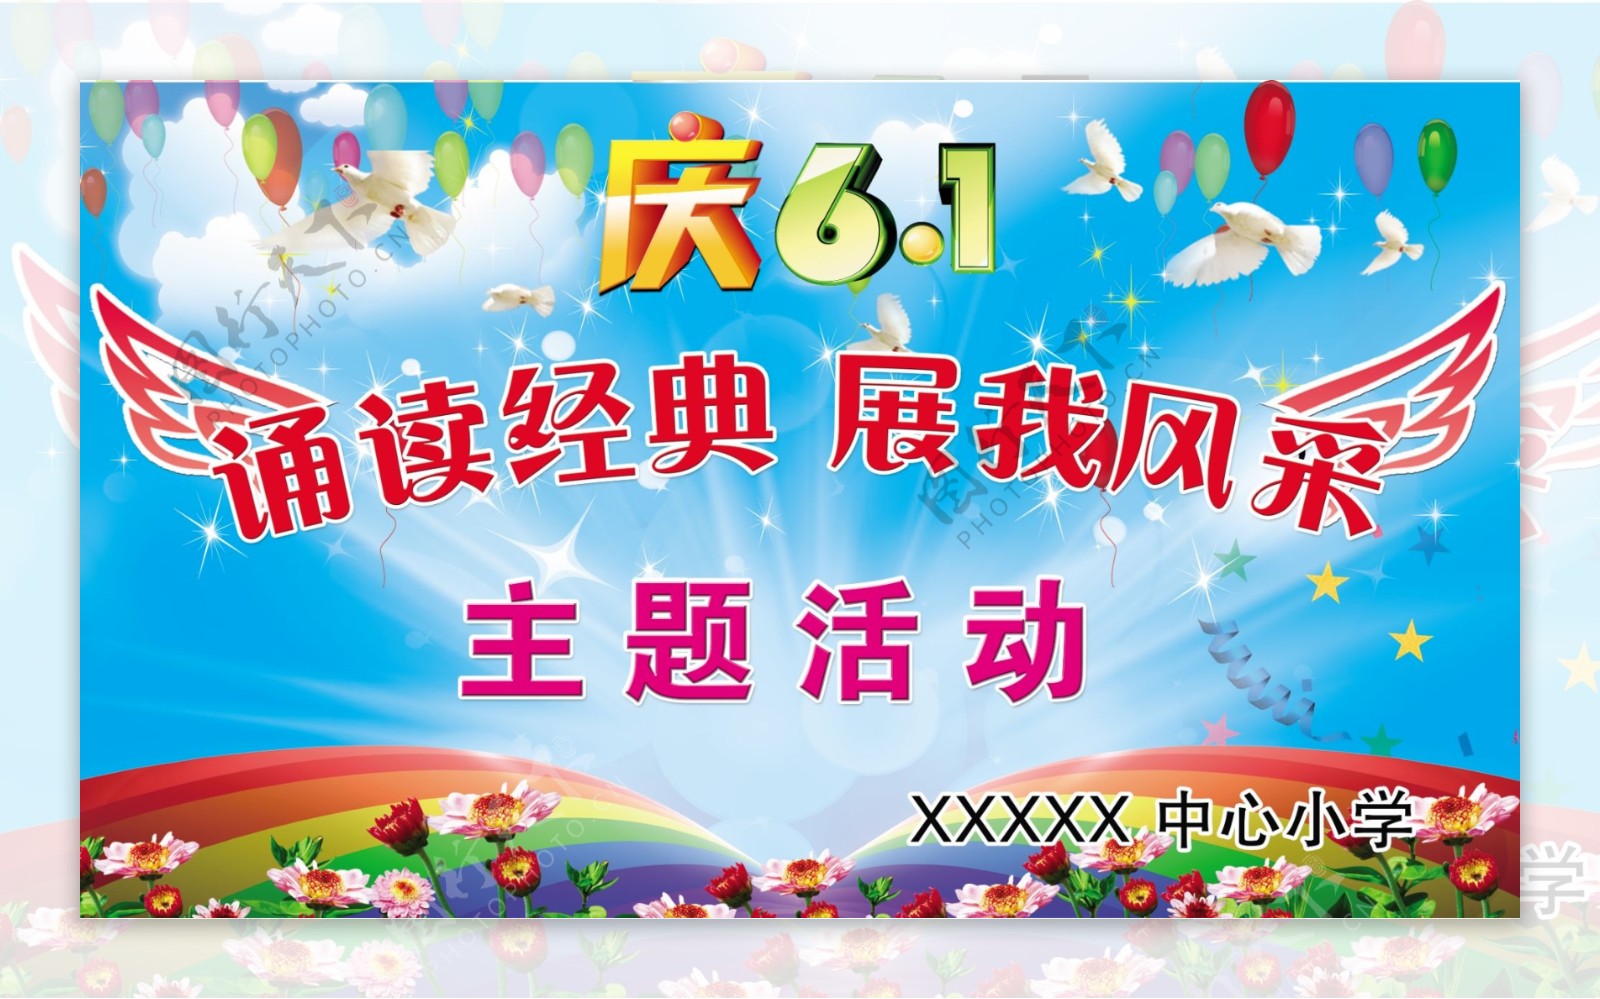 庆61儿童节图片